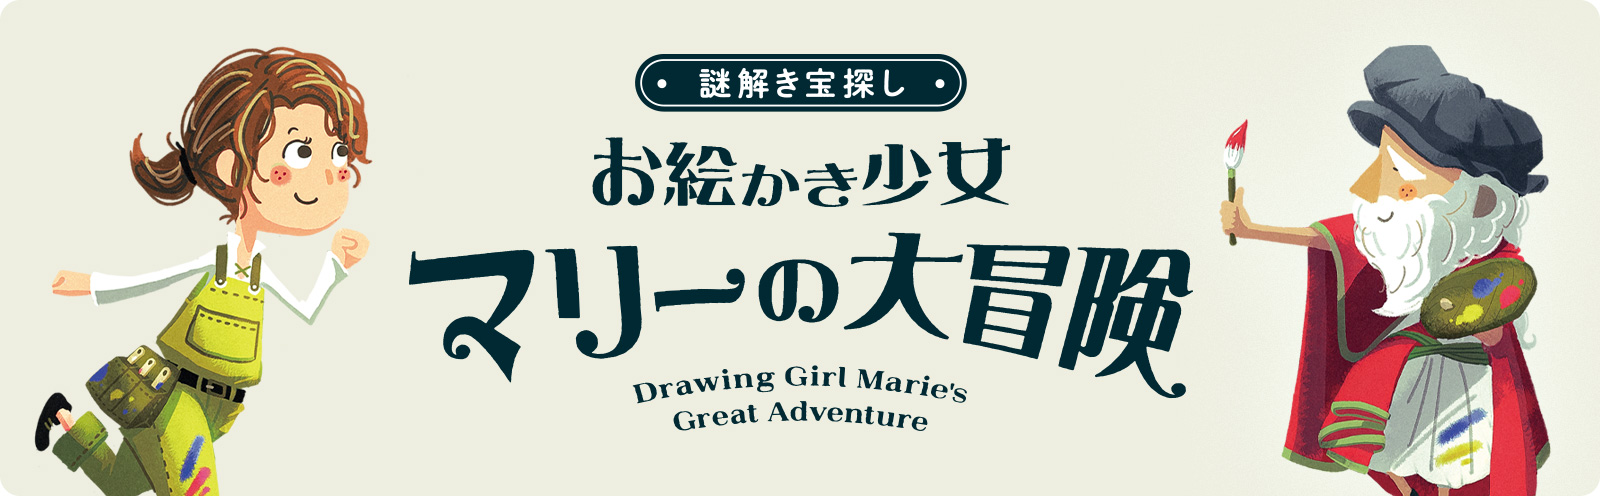 謎解き宝探し『お絵かき少女マリーの大冒険』Drawing Girl Marie's Great Adventure